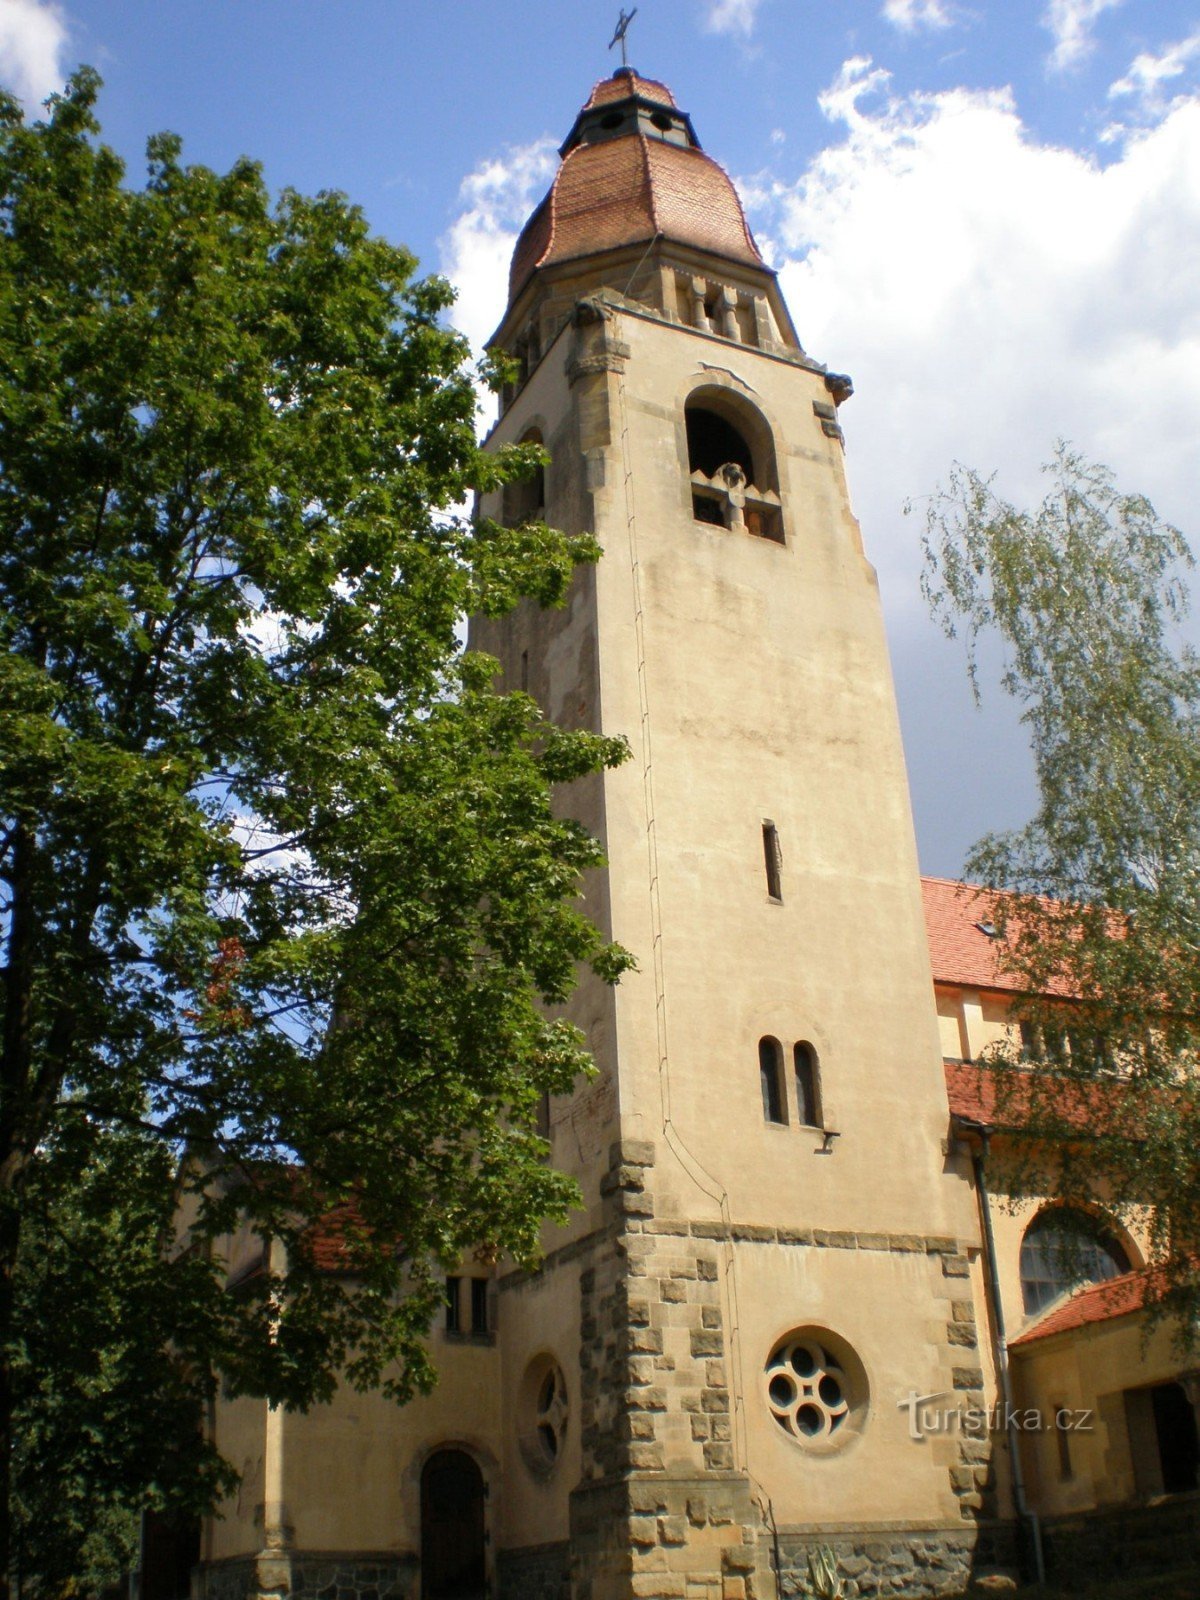 Štěchovice - igreja de St. Jan Nepomucký